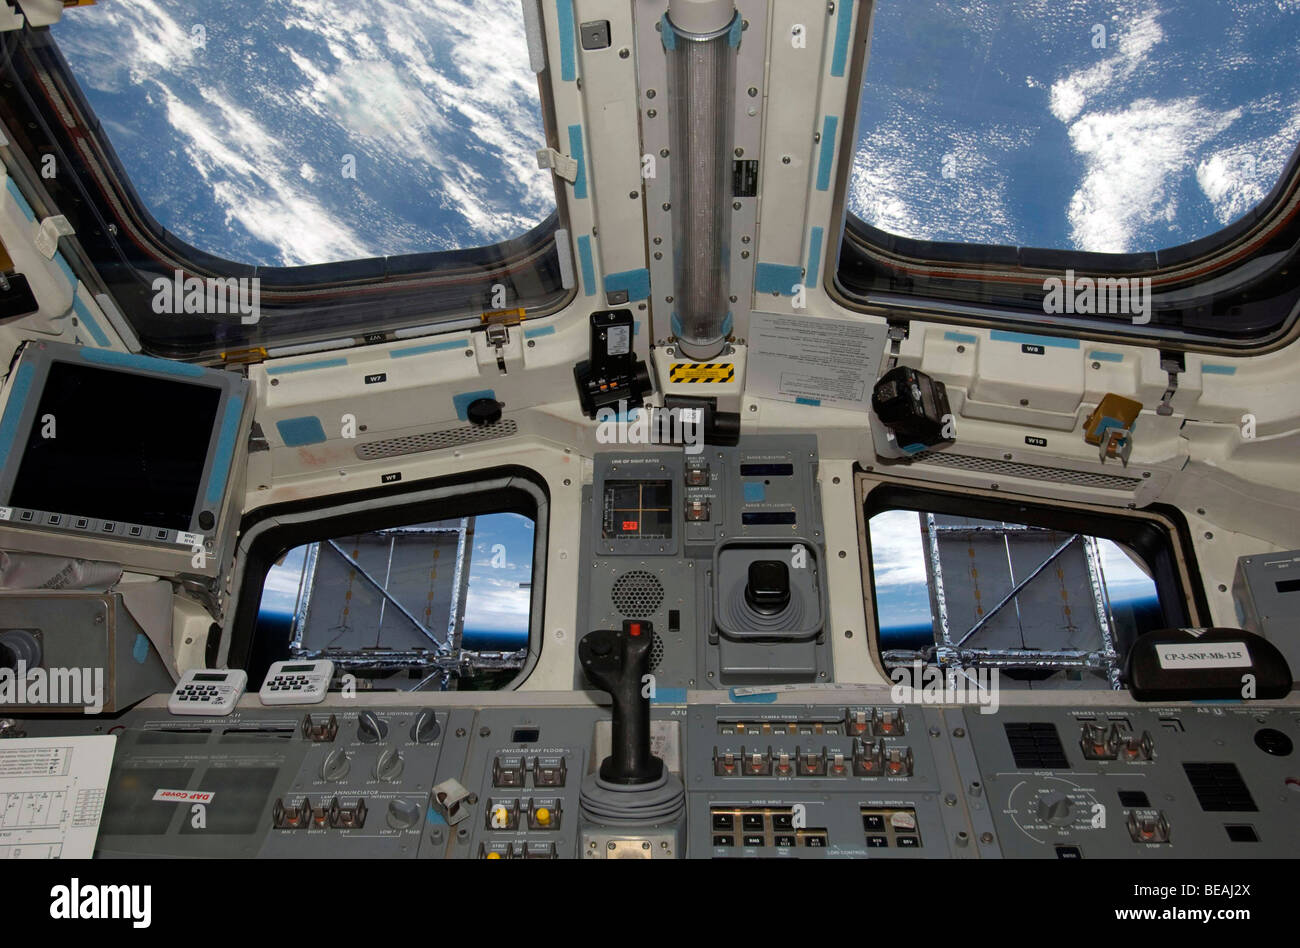 Il Cockpit della navetta spaziale Atlantis. Maggio 2009. Ottimizzato e la versione avanzata di un originale immagine della NASA. Il credito della NASA. Foto Stock